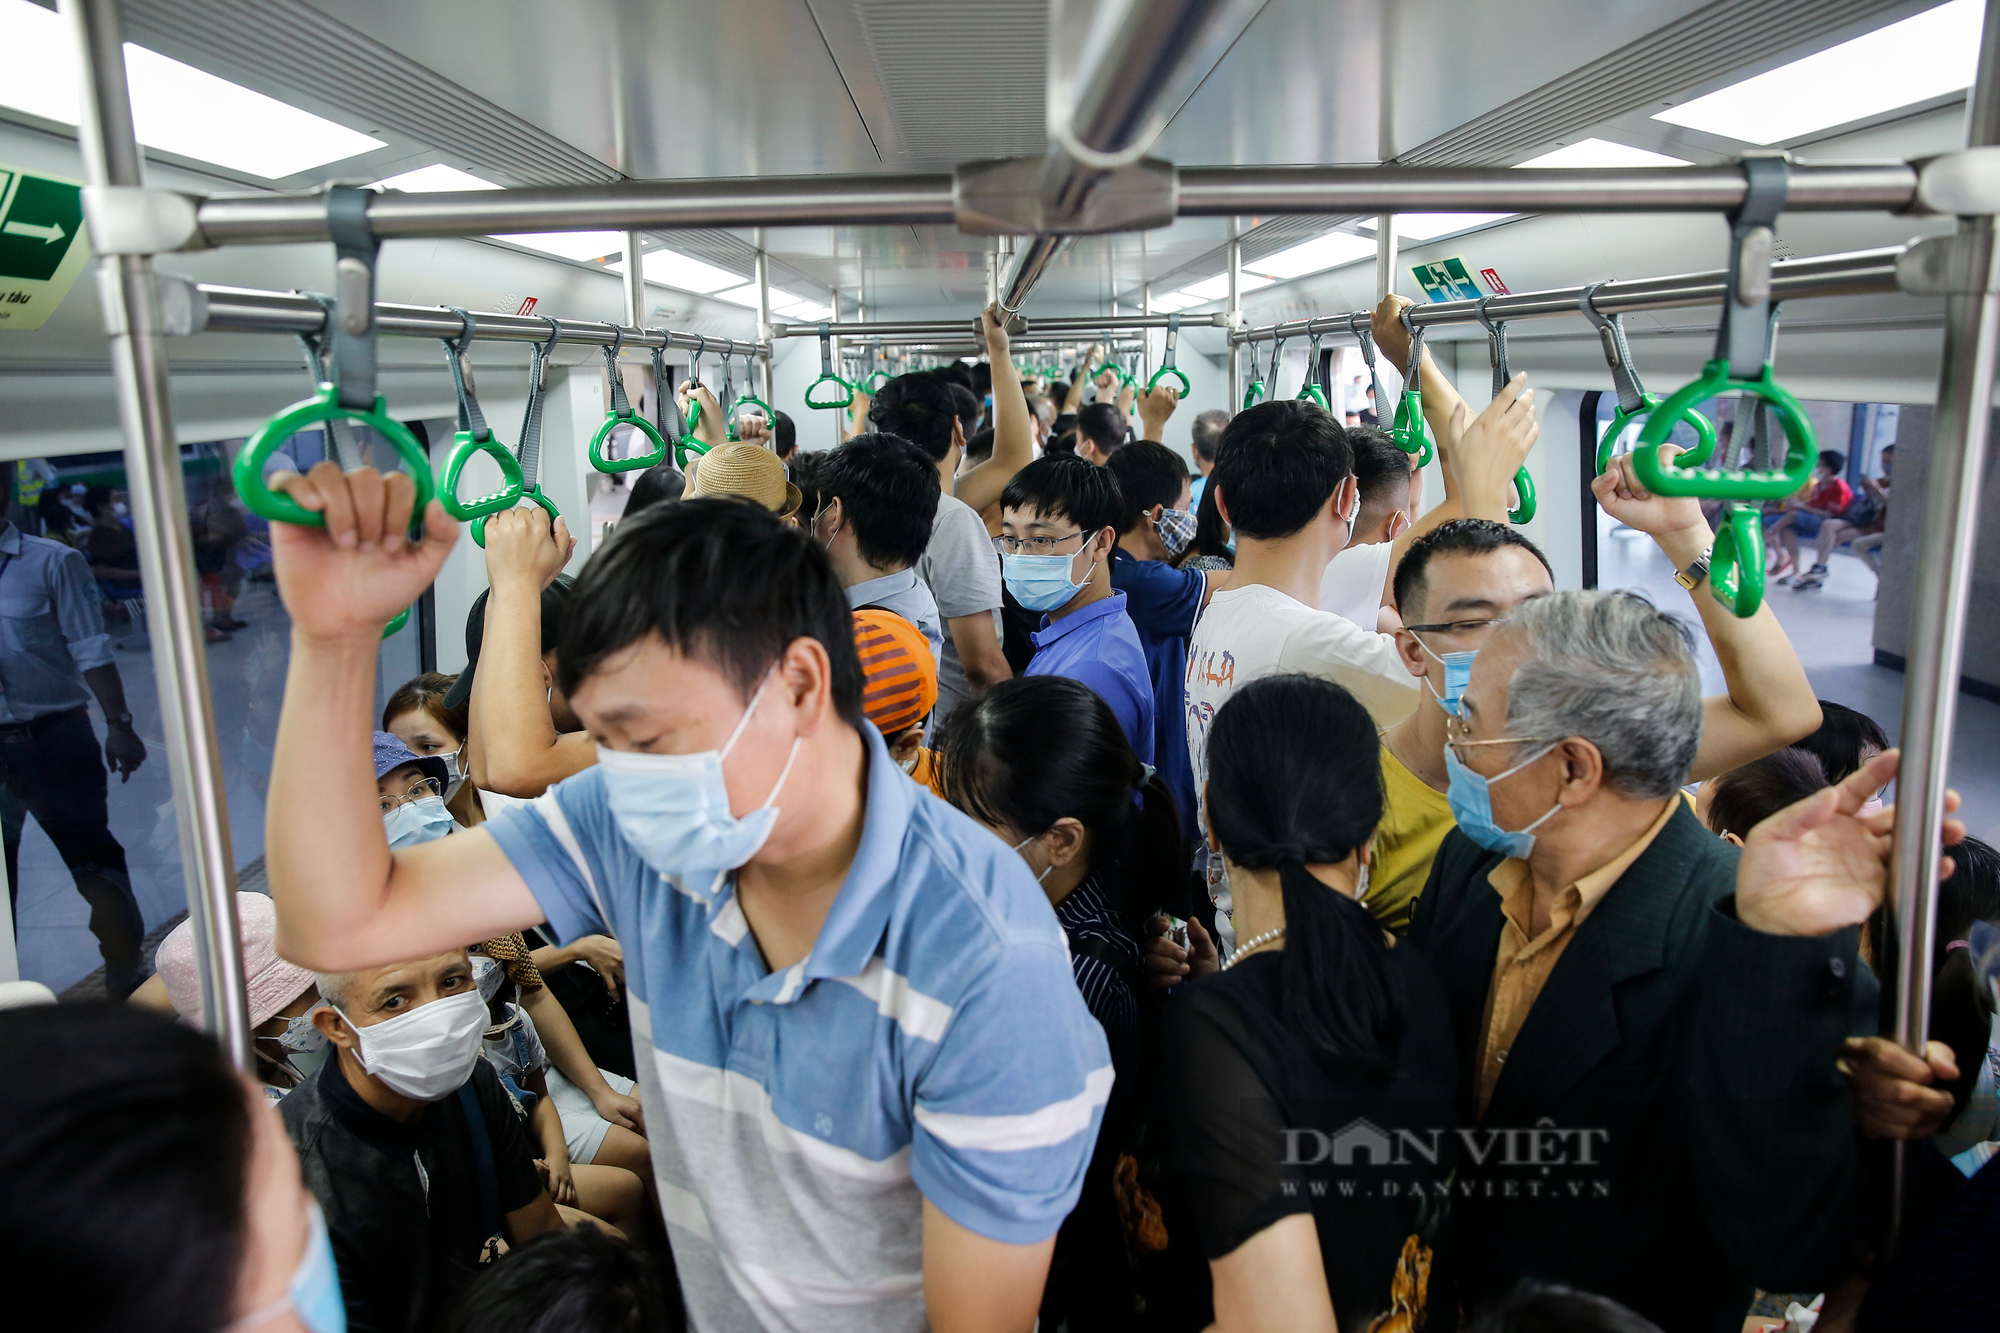 Hàng nghìn người chen lấn nhau chạy thử tàu đường sắt Cát Linh - Hà Đông - Ảnh 12.